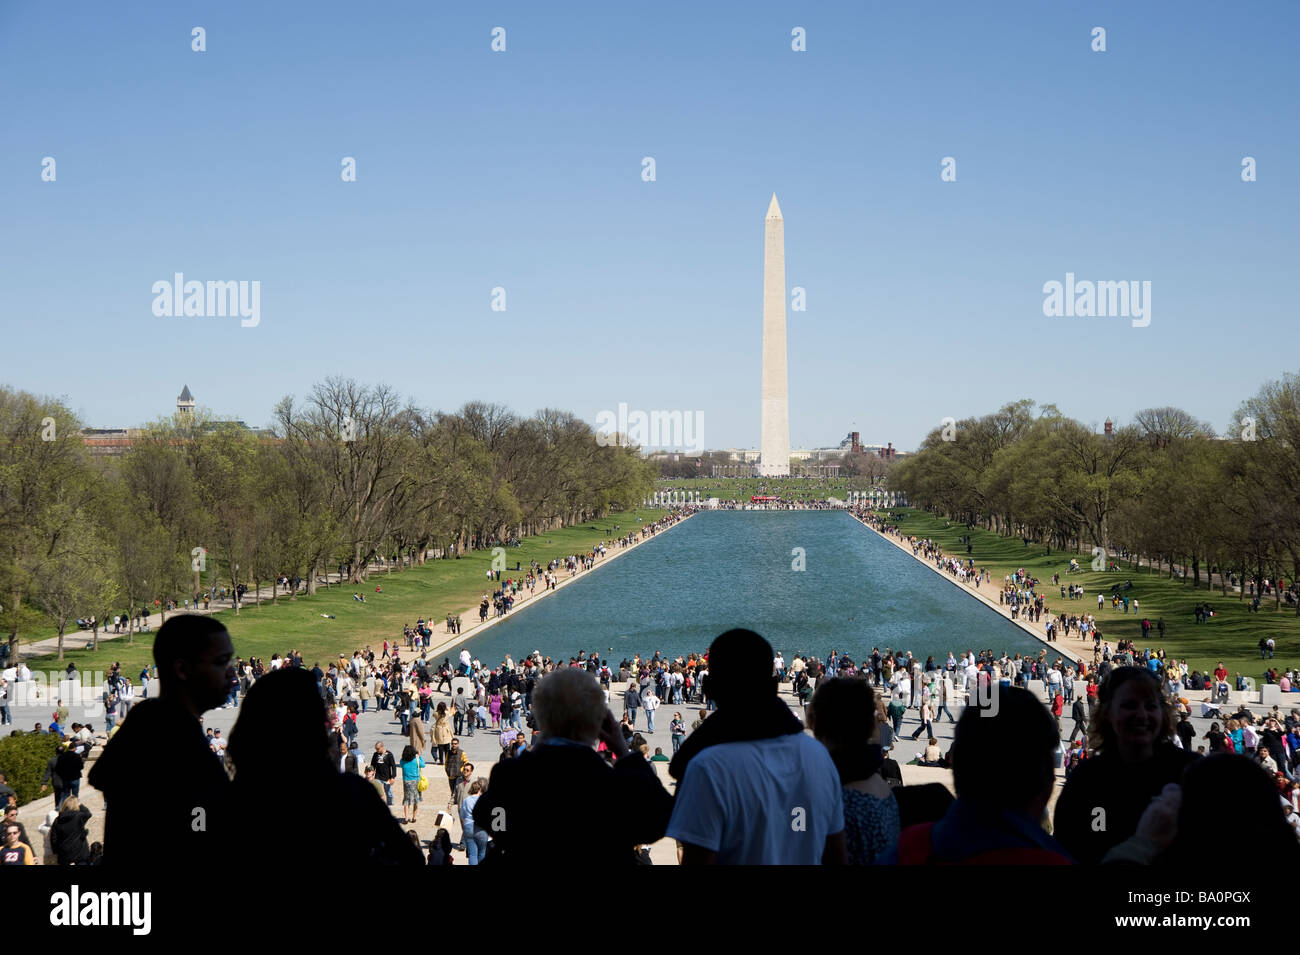 El Monumento a Washington, monumentos de arquitectura Foto de stock